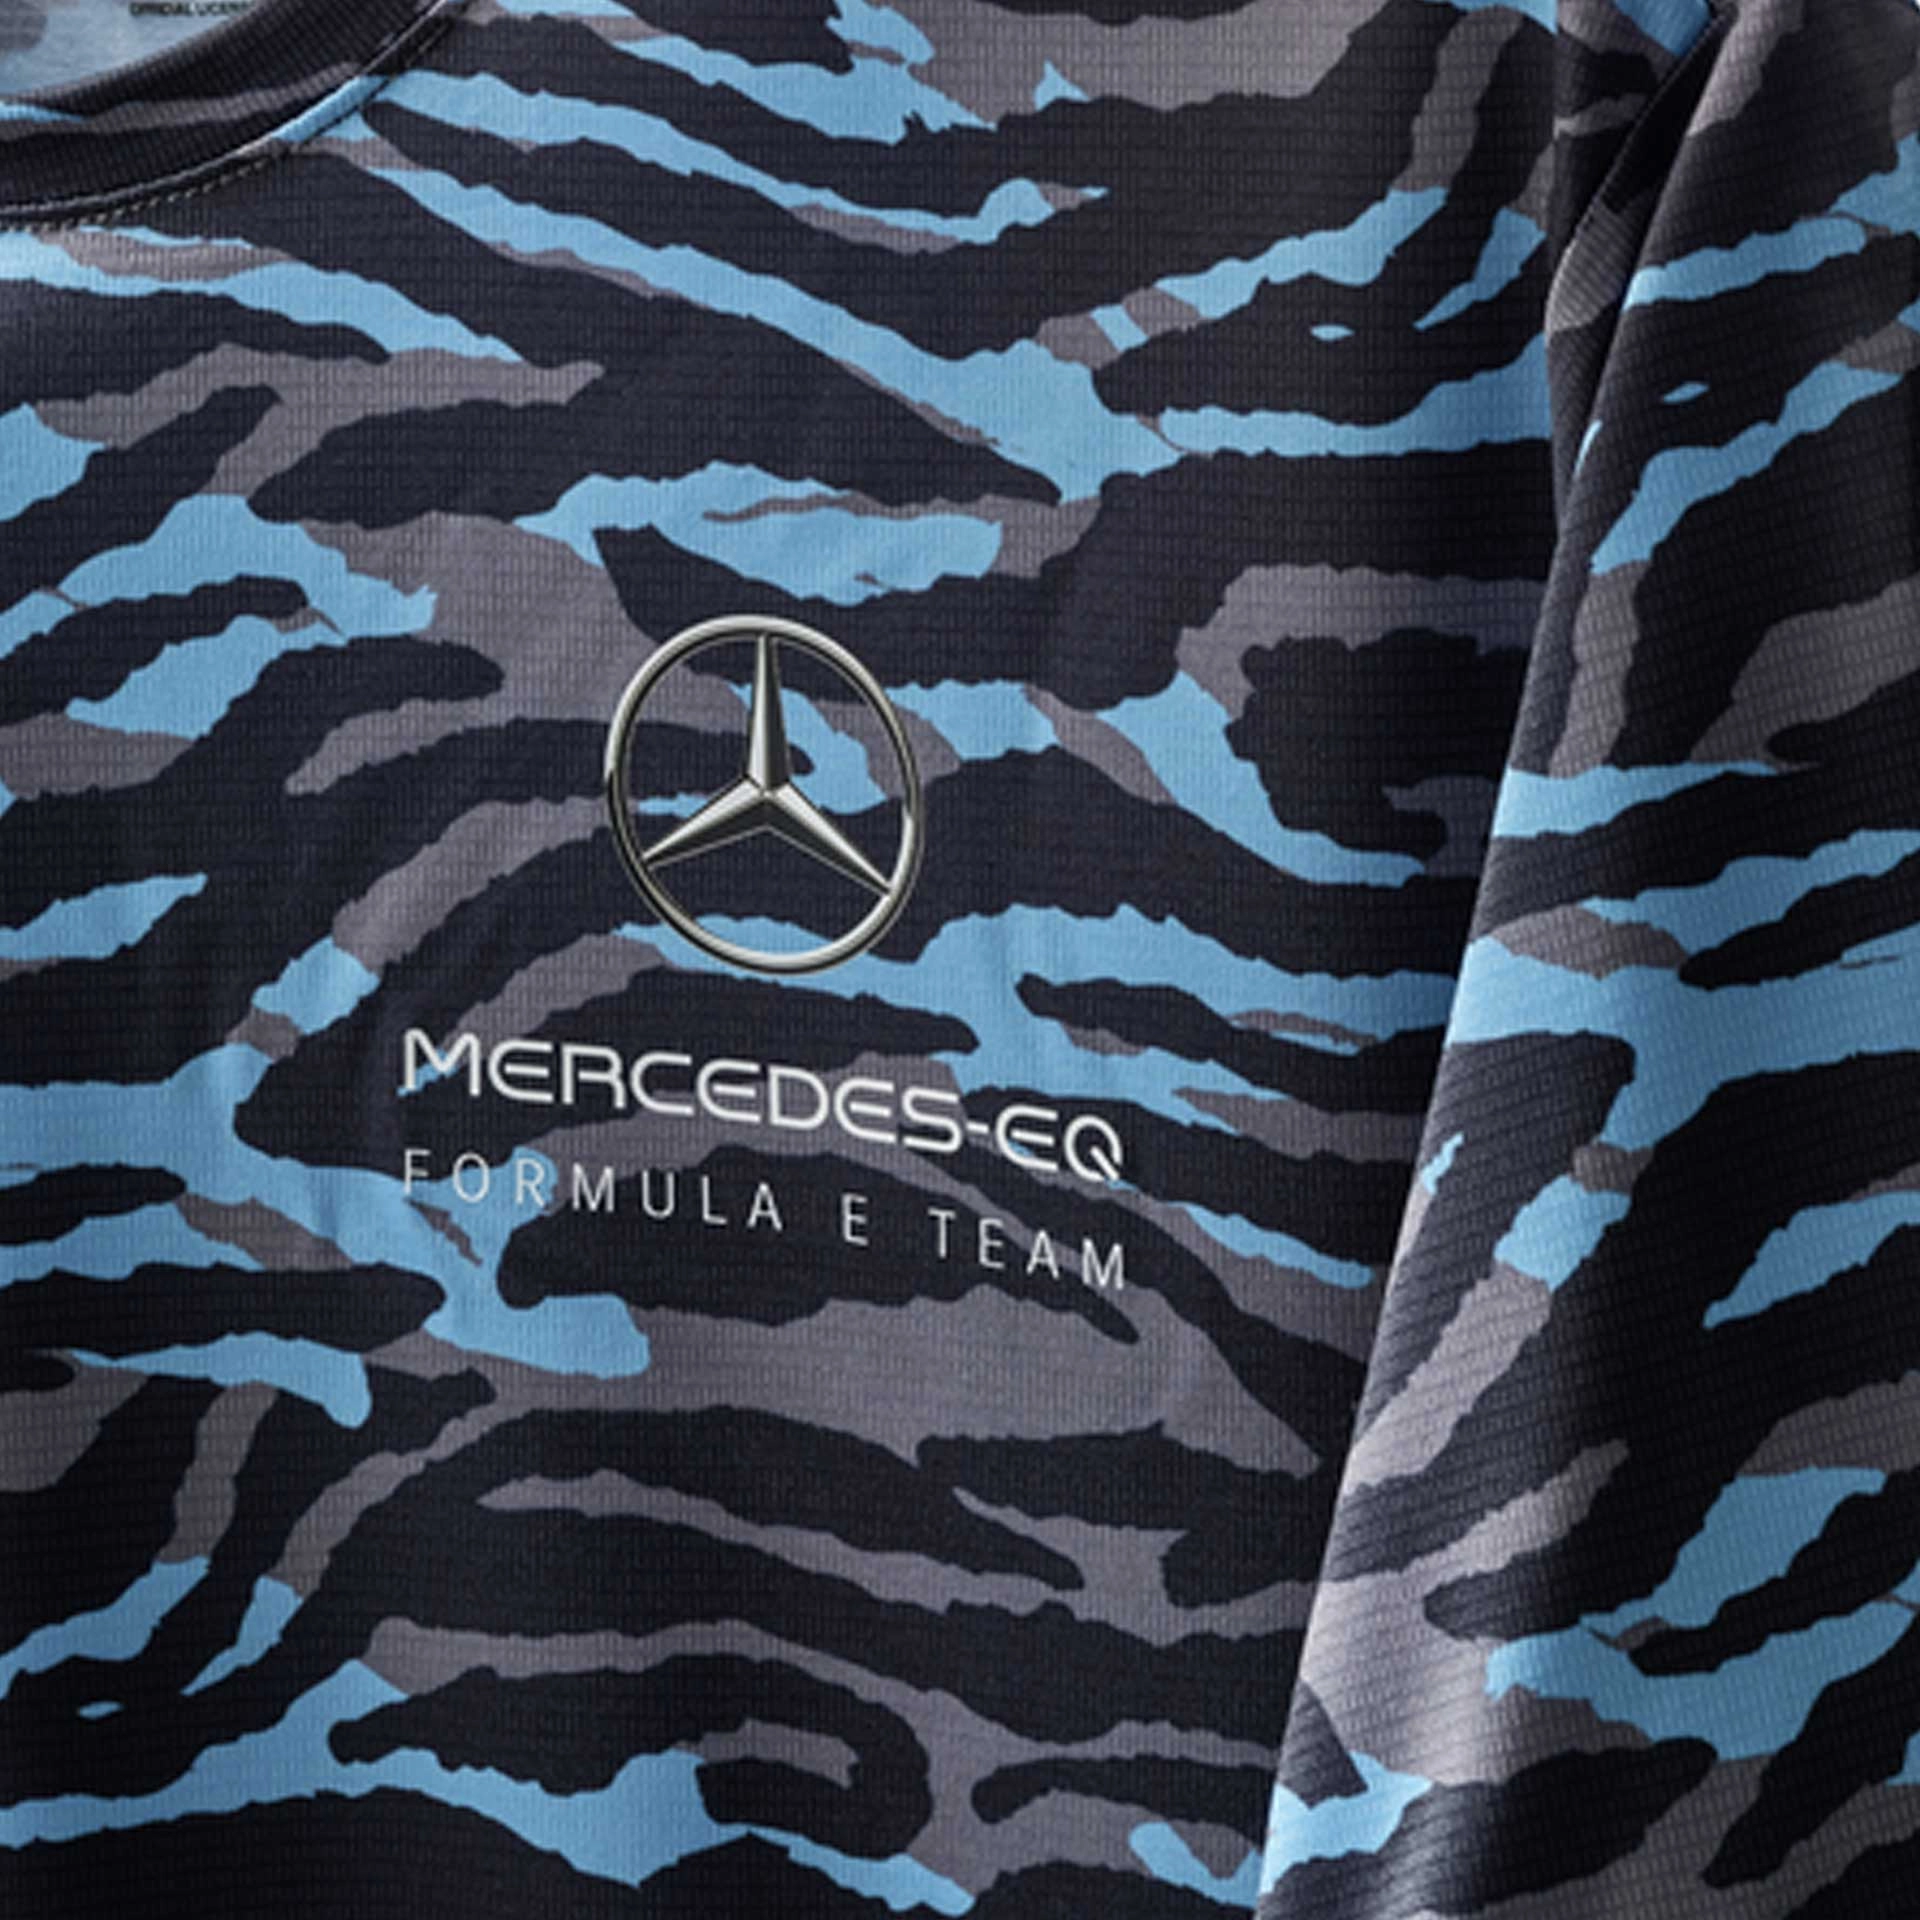 B67997882_mercedes-benz_t-shirt_herren_camouflage_blau_grau_rosier-onlineshop2